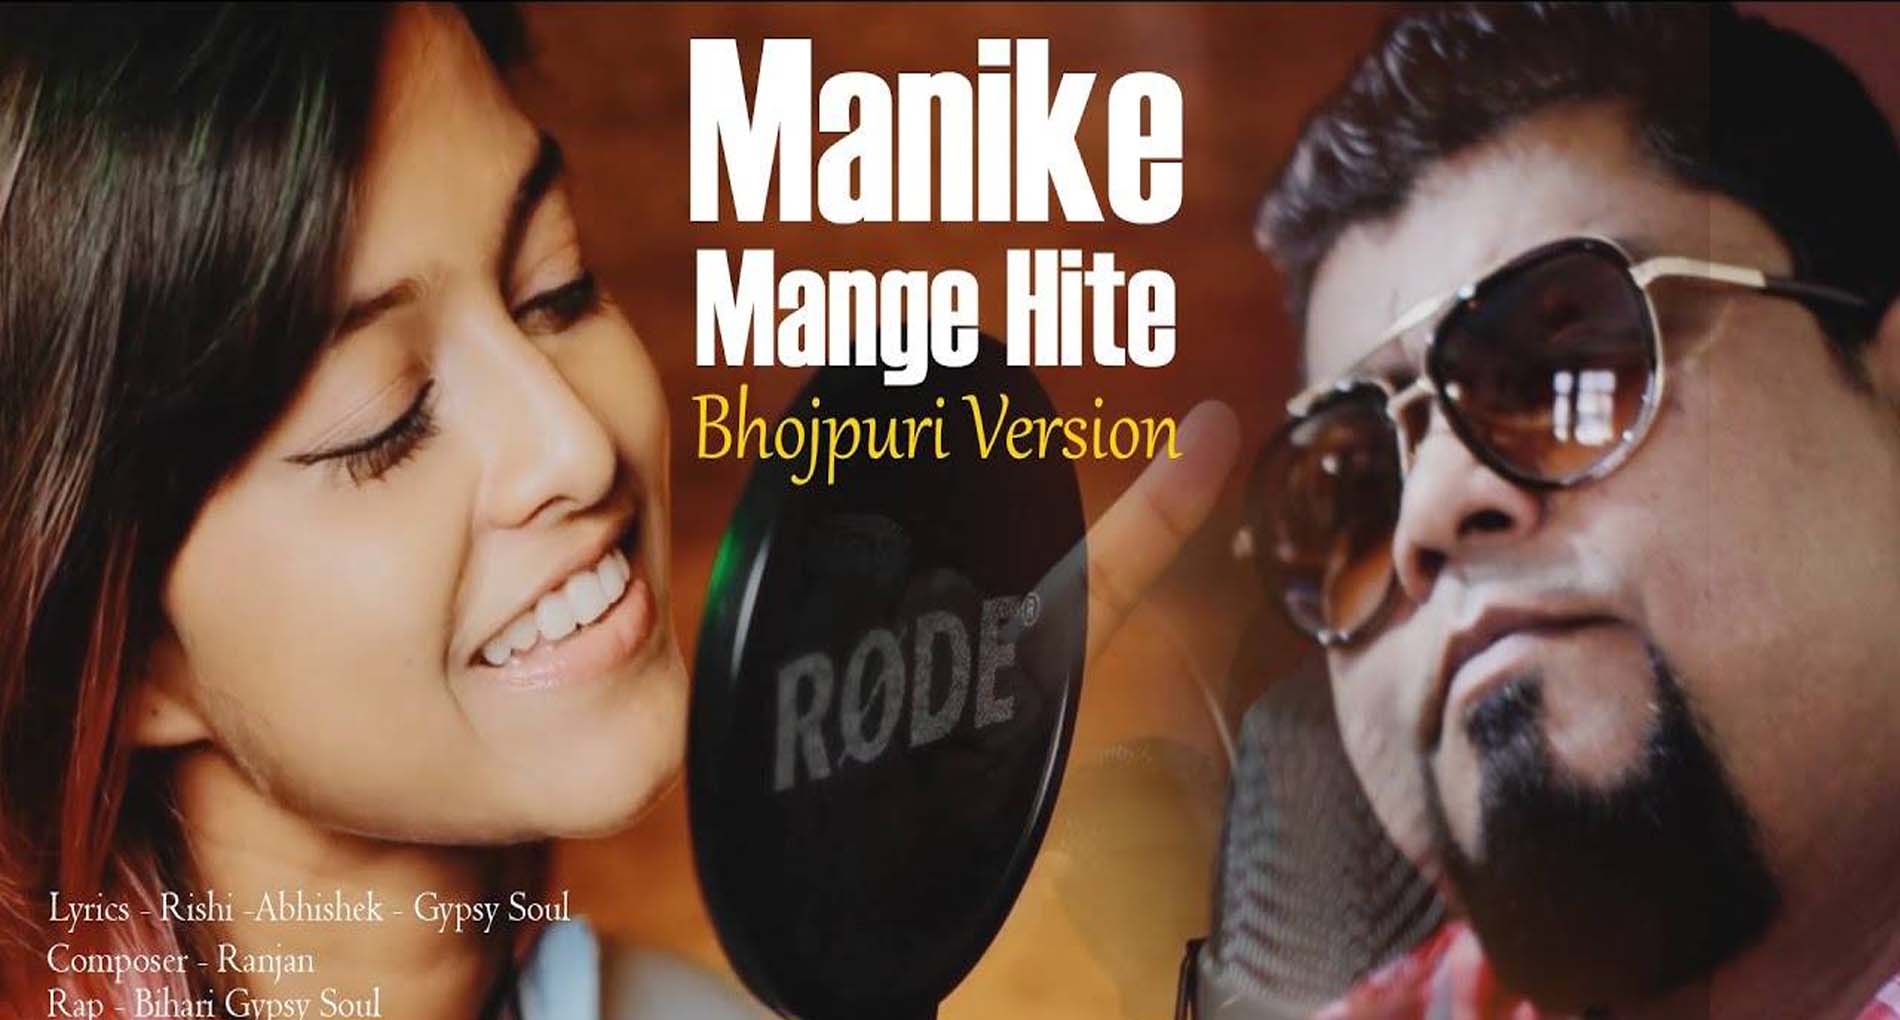 Manike Mage Hithe Bhojpuri Version: वायरल हुआ Manike Mage Hithe गाने का भोजपुरी वर्जन! देखें वीडियो